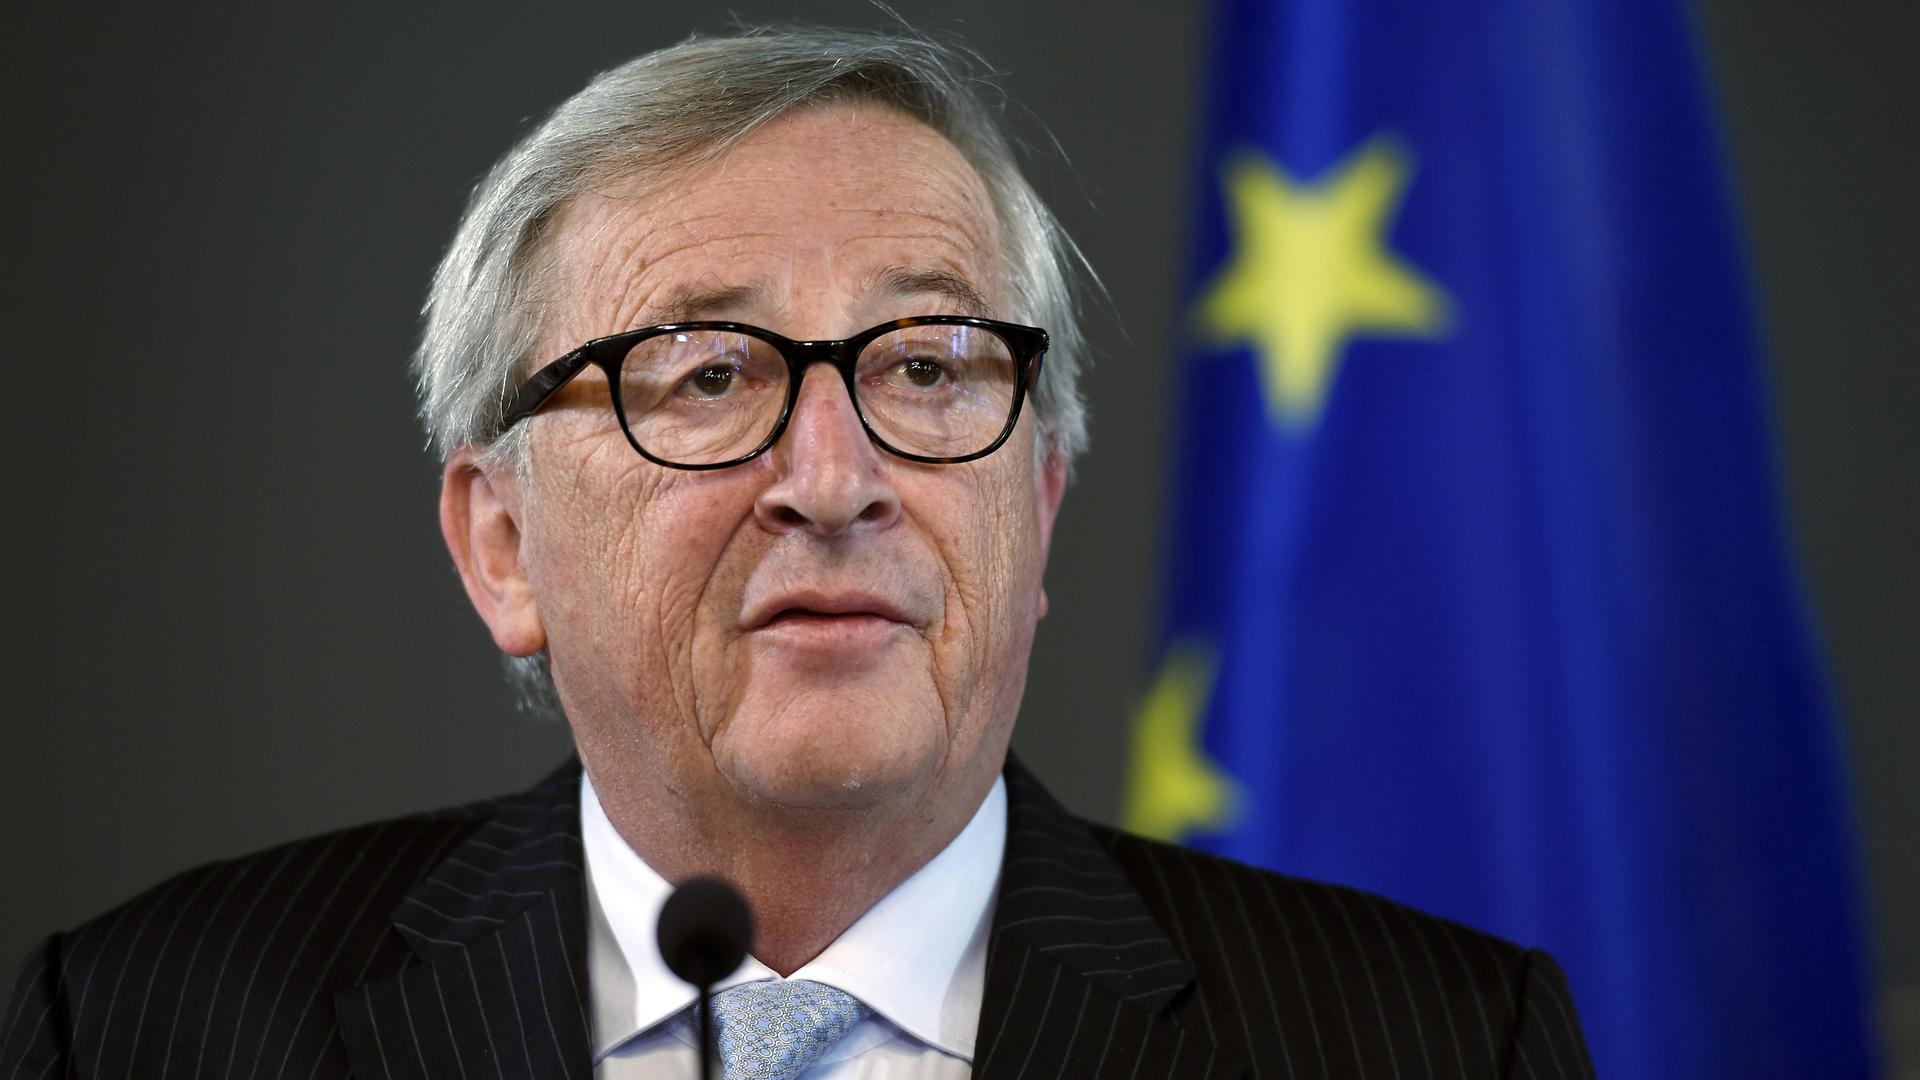 Jean-Claude Juncker, âgé de 64 ans, doit quitter ses fonctions à la Commission européenne le 1er novembre 2019.